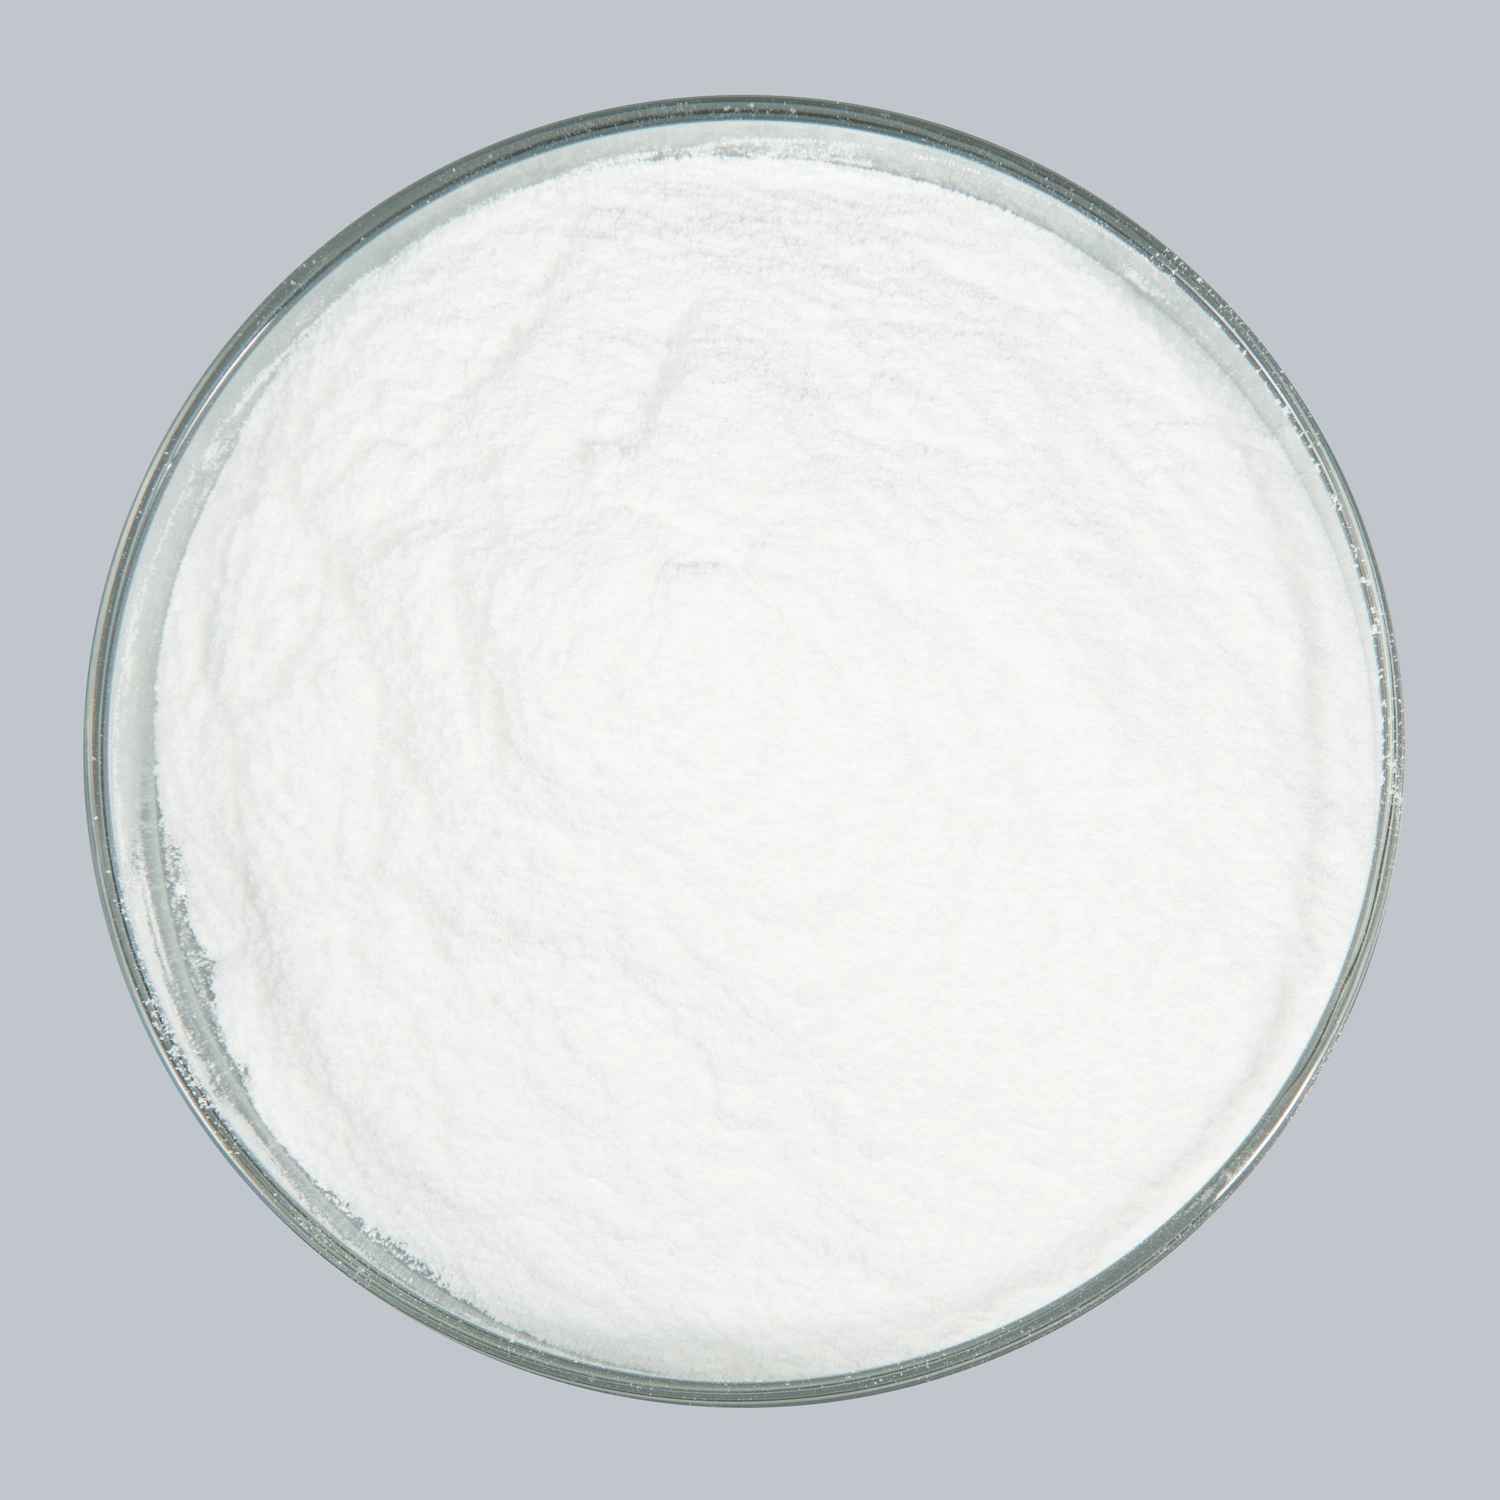 Poudre blanche de qualité alimentaire de benzoate de potassium CEMFA : 582-25-2